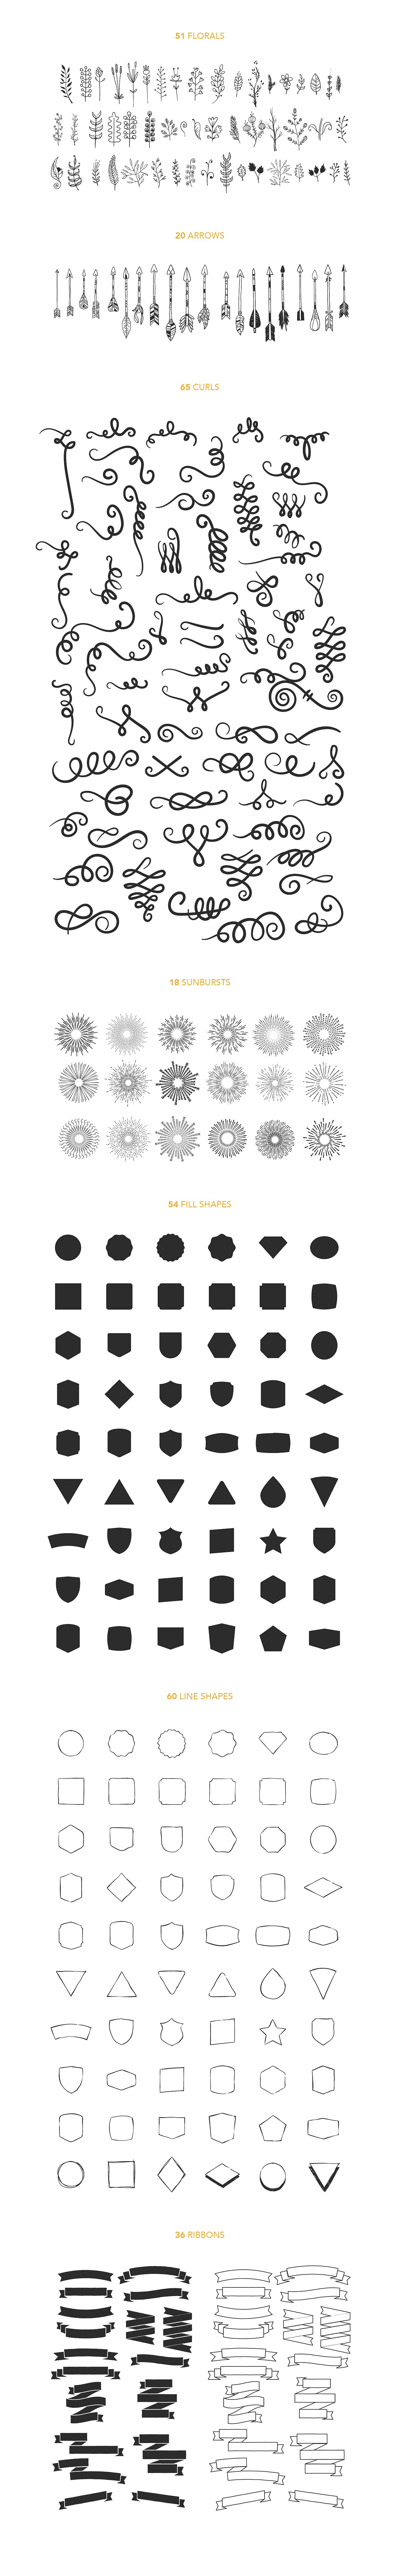 设计素材盛宴：98款字体+520个独立矢量图形+270款花卉元素 FontGrap – Font & Graphic Bundle插图(4)